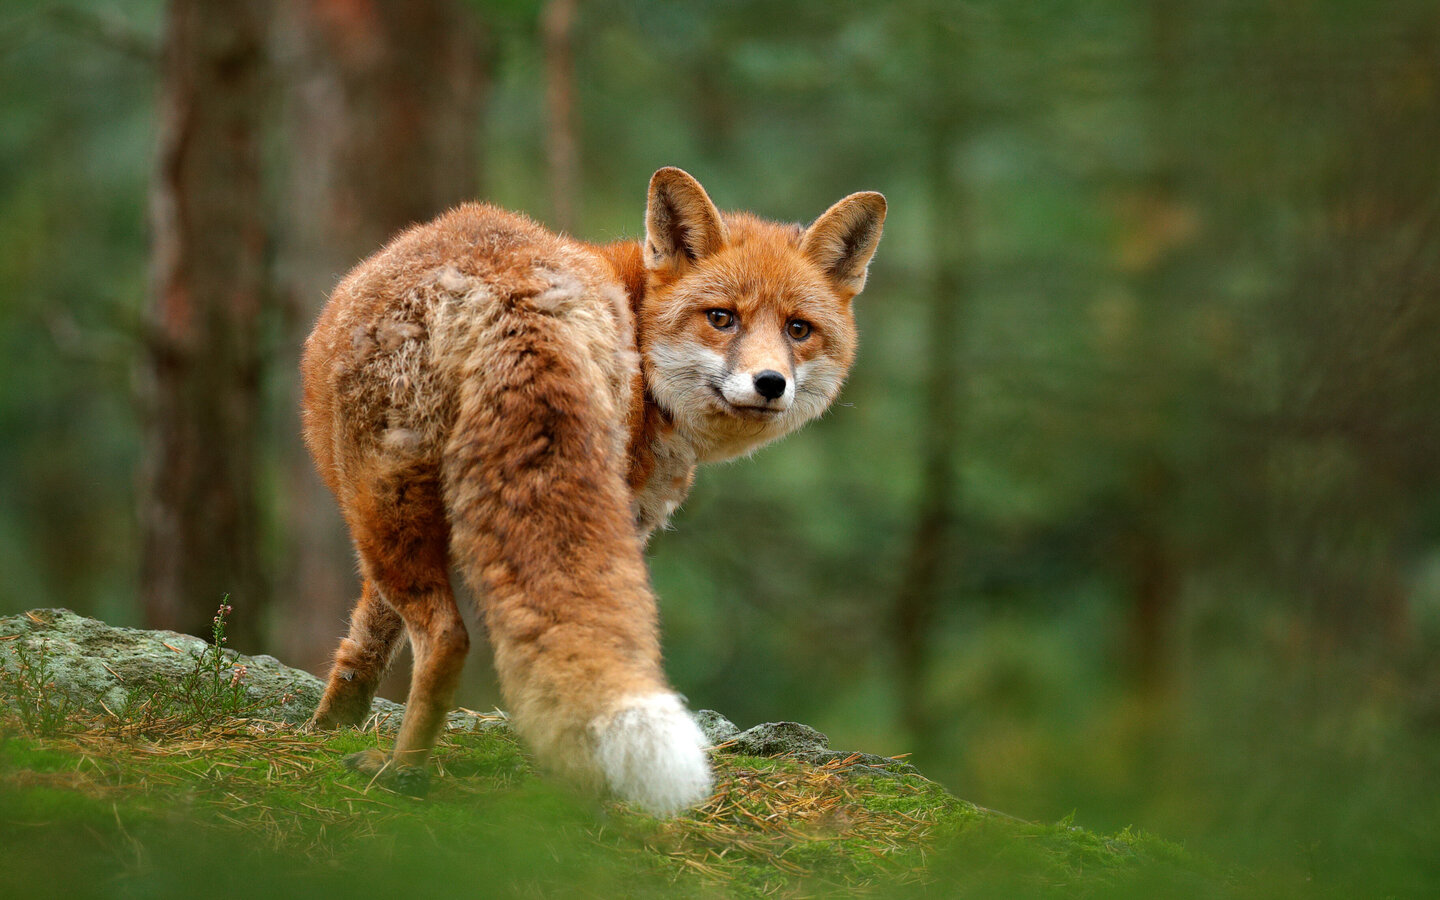 Fuchs im Wald von hinten, der sich umdreht und direkt in die Kamera schaut